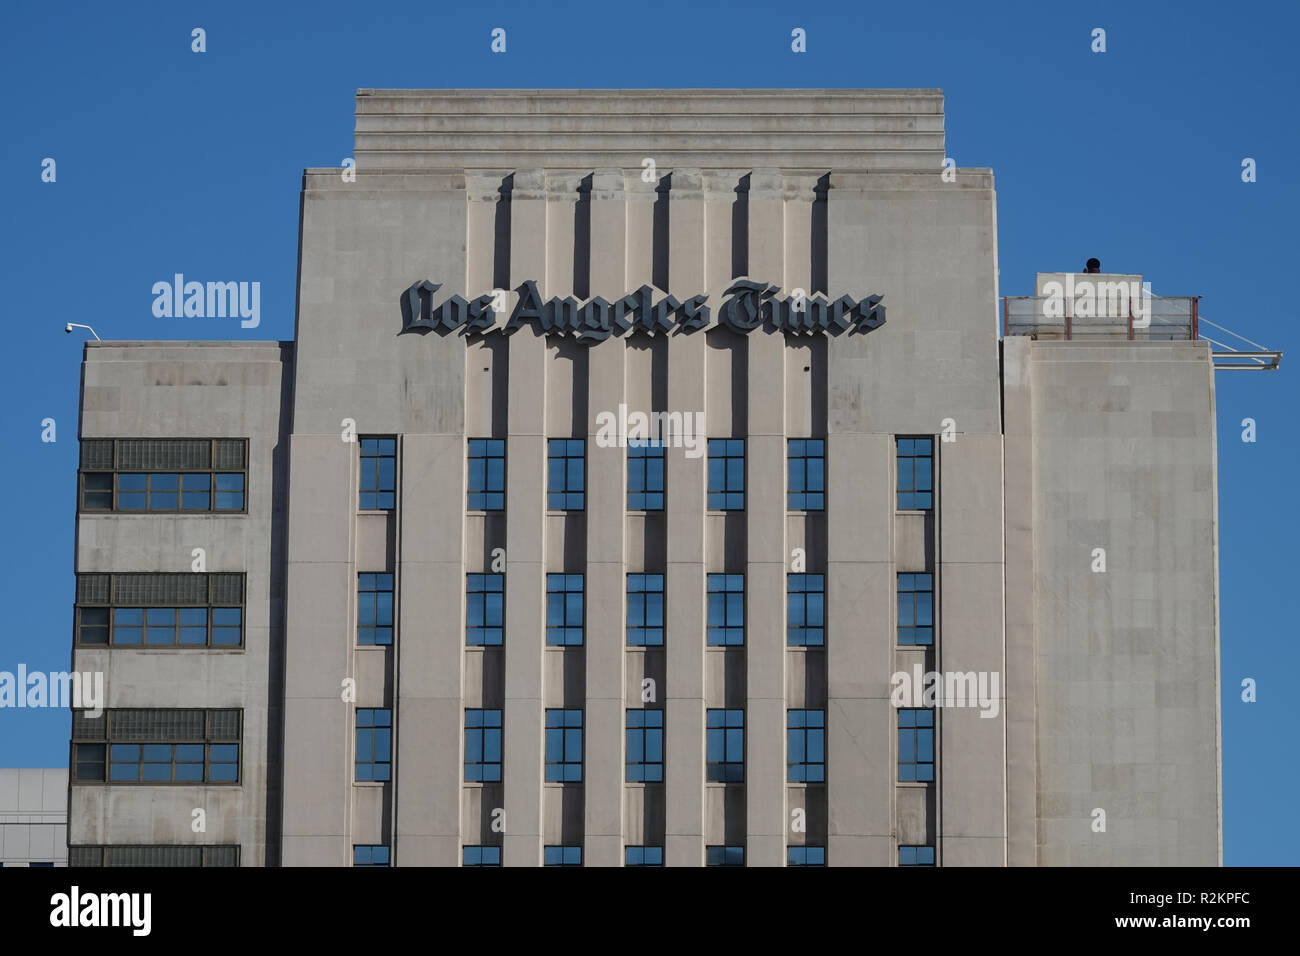 Los Angeles, CA/USA, Sept. 8, 2018: Der alte Los Angeles Times Zeitung Gebäude in der Innenstadt von L.A. liegt auf einer sonnigen, am späten Nachmittag Tag angezeigt. Stockfoto